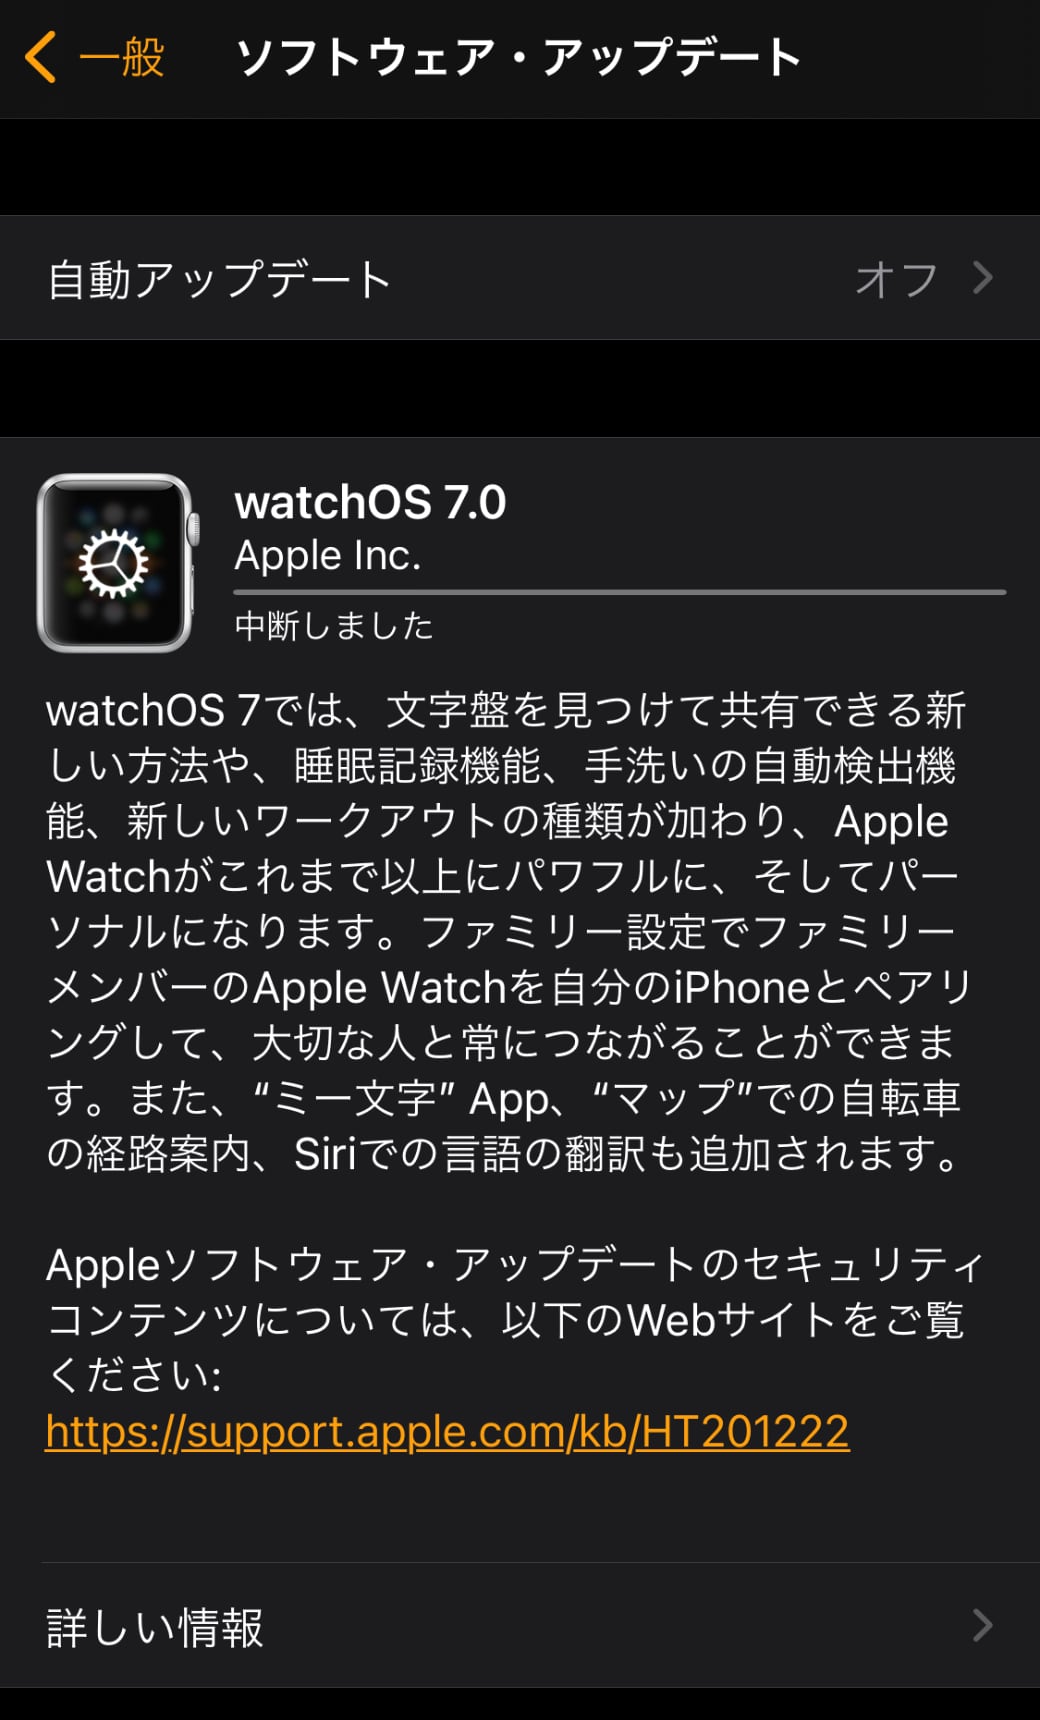 Apple、「watchOS 7」をリリース ‒ 睡眠記録機能、手洗い自動検出機能、ファミリー共有設定など多くの新機能